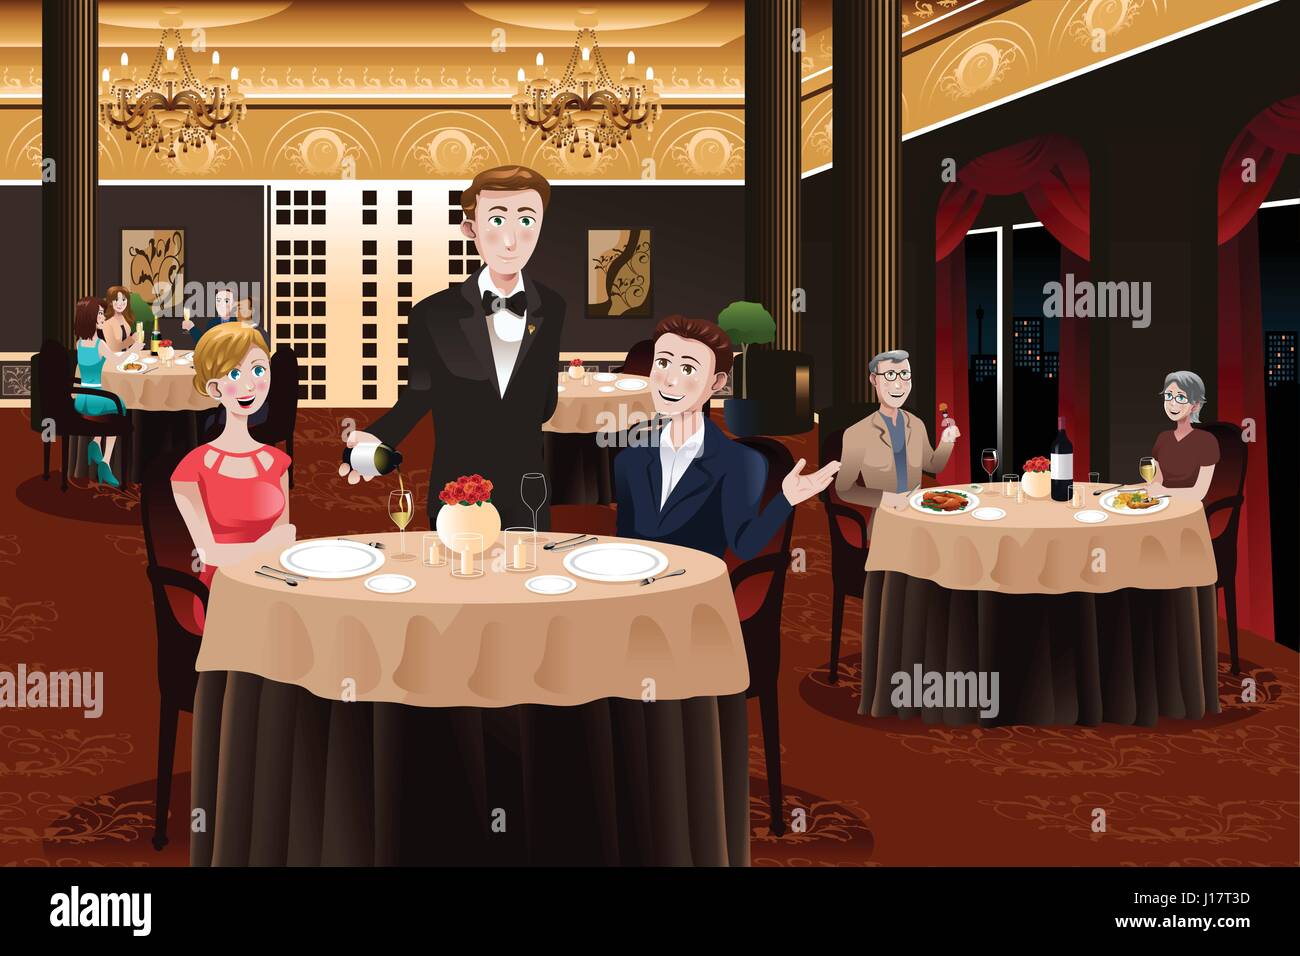 Un vecteur illustration d'un serveur dans un restaurant servant des clients  Image Vectorielle Stock - Alamy